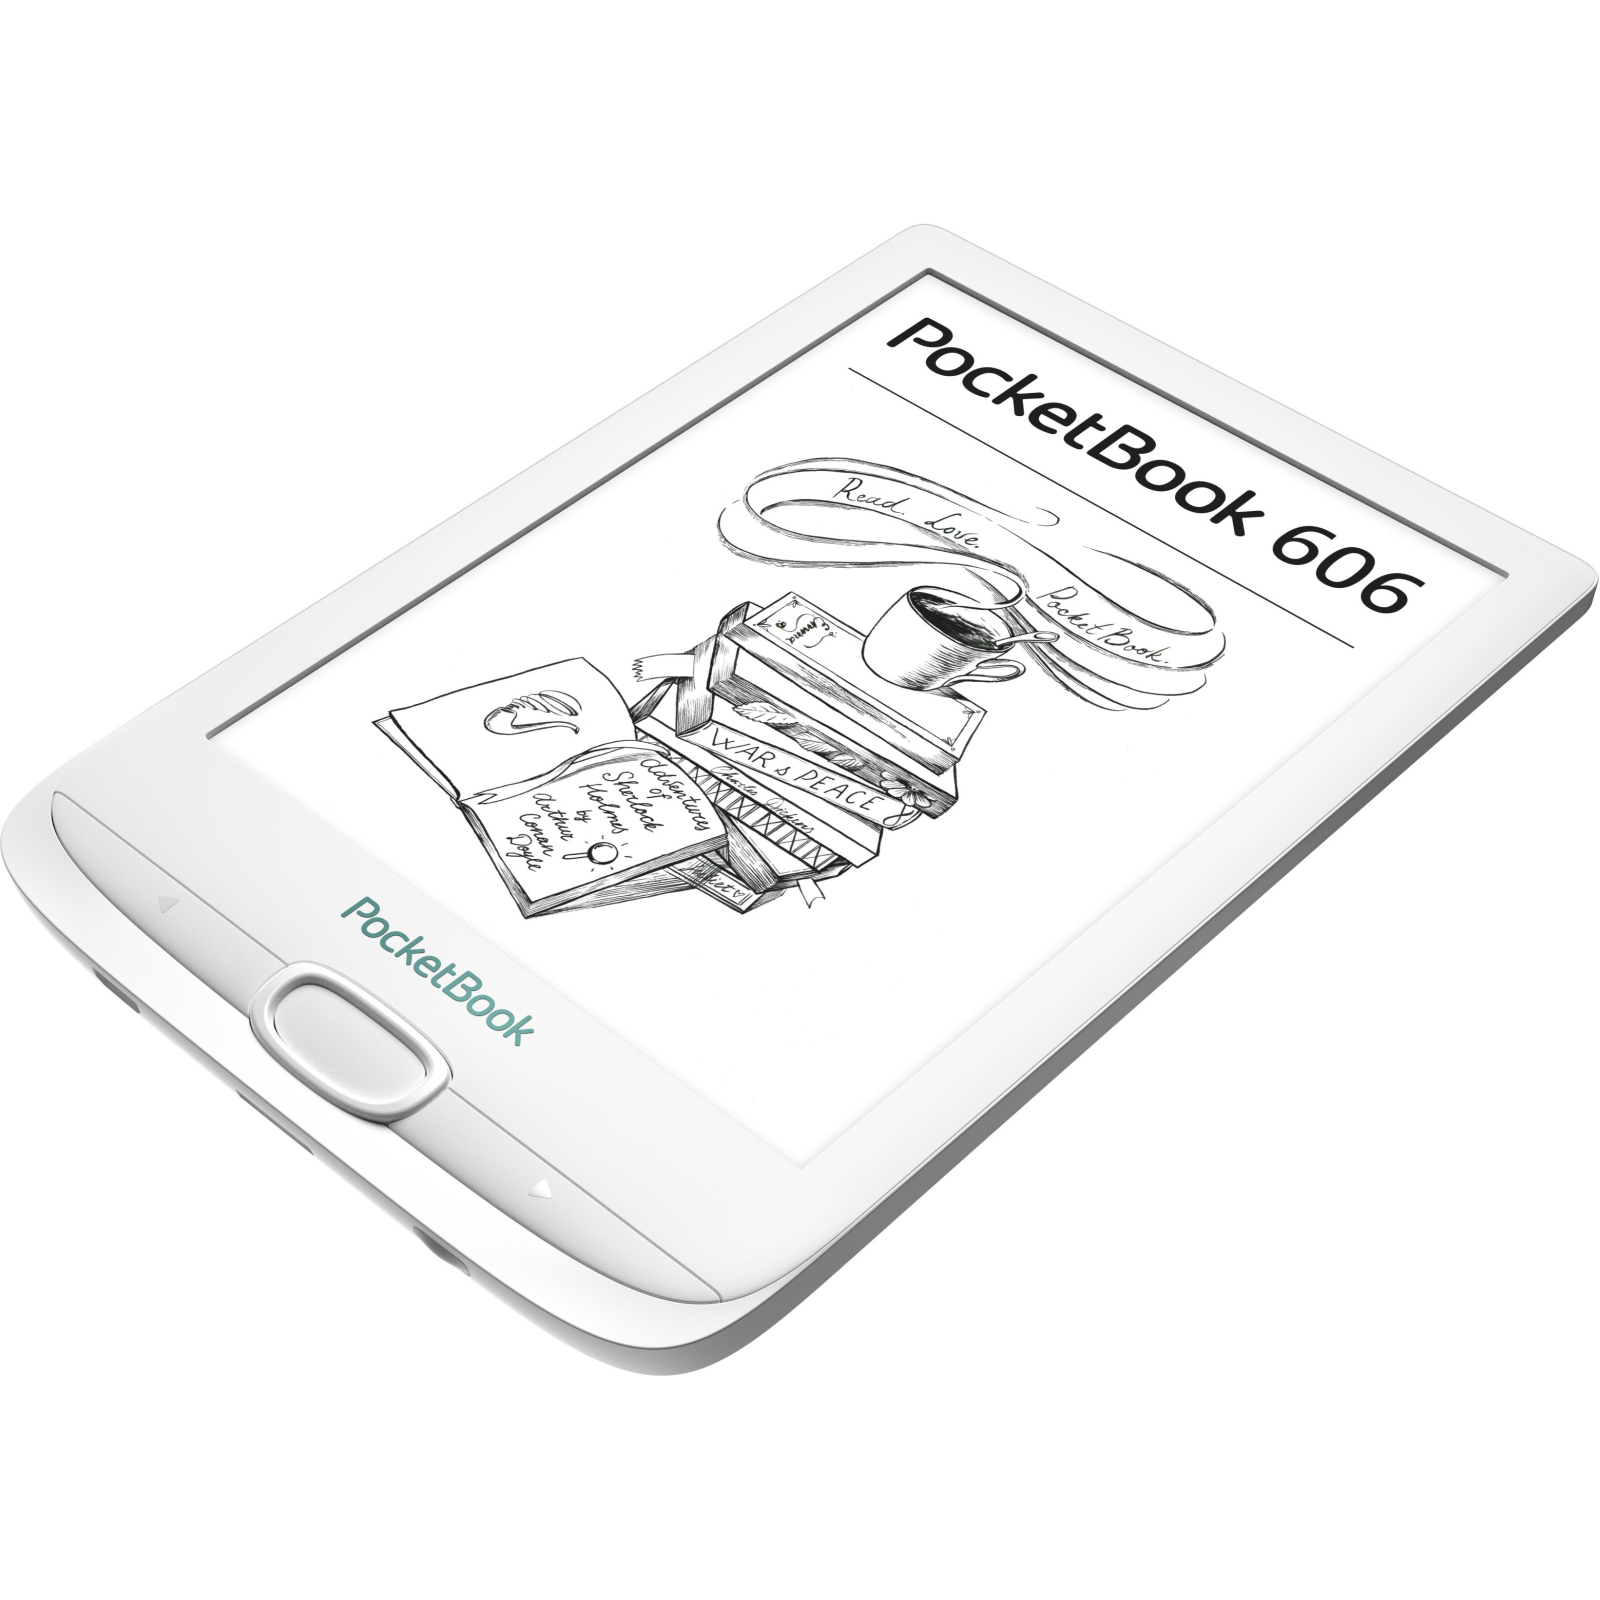 Электронная книга Pocketbook 606, White (PB606-D-CIS) изображение 5